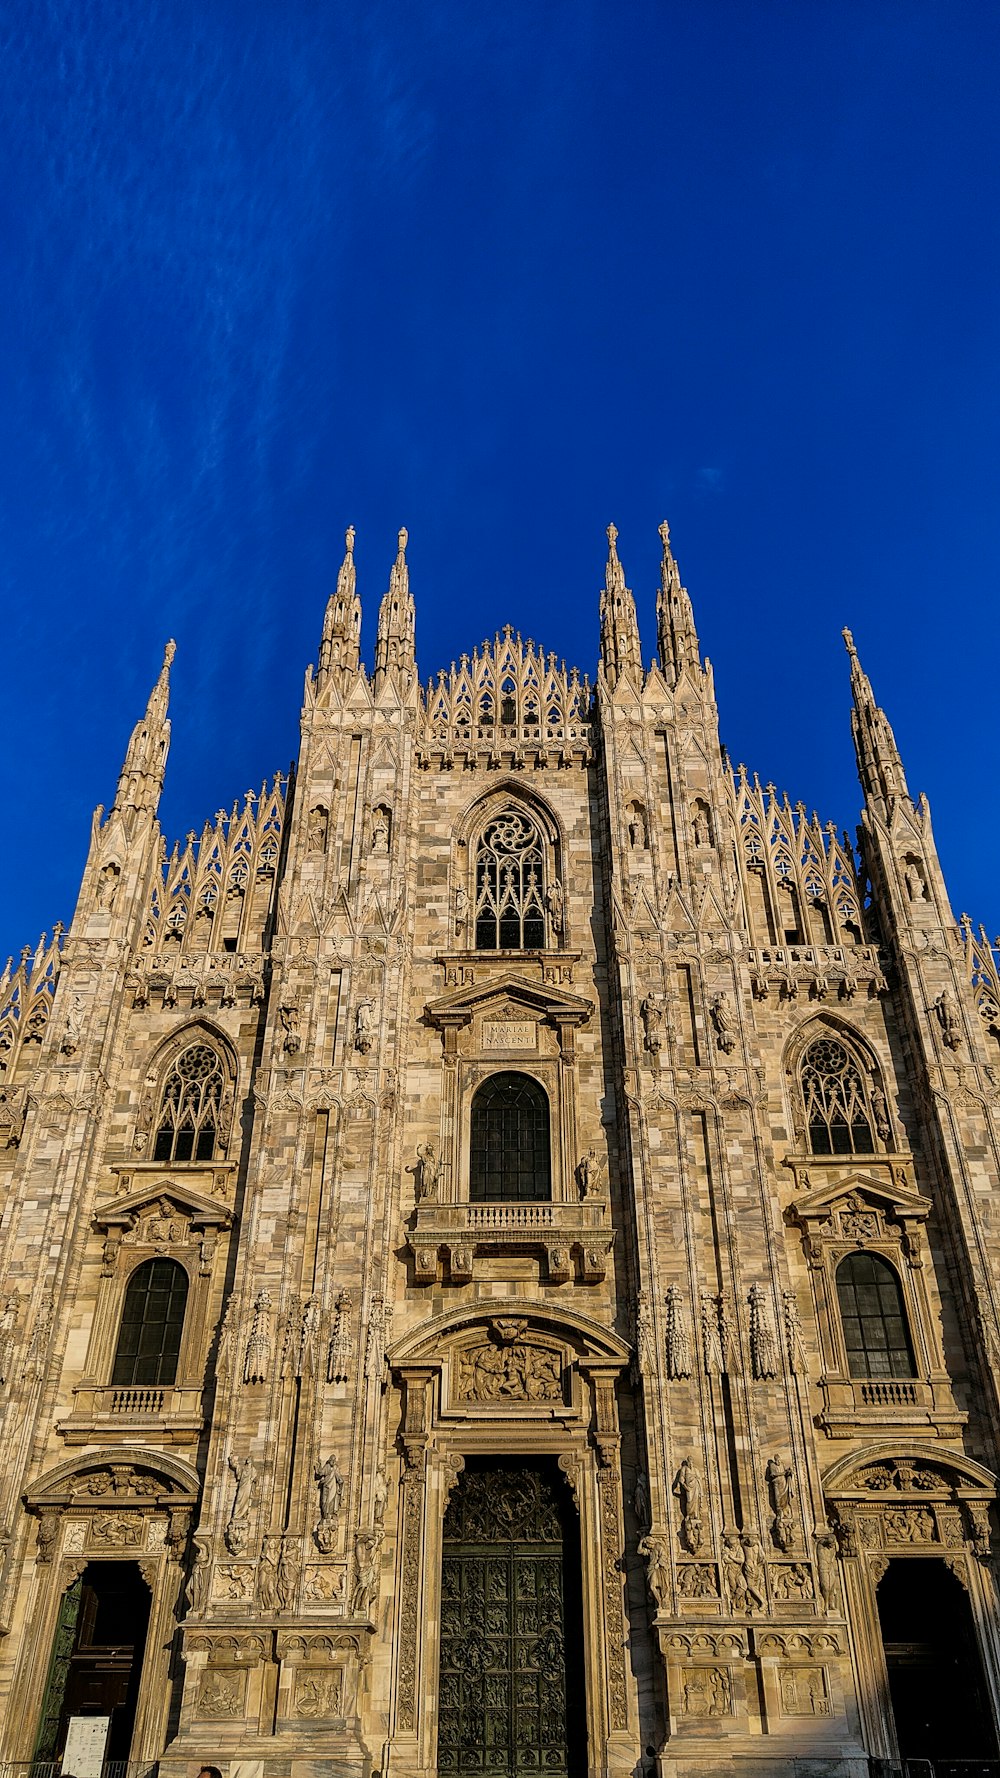 ミラノ大聖堂を背景にした大きな石造りの建物